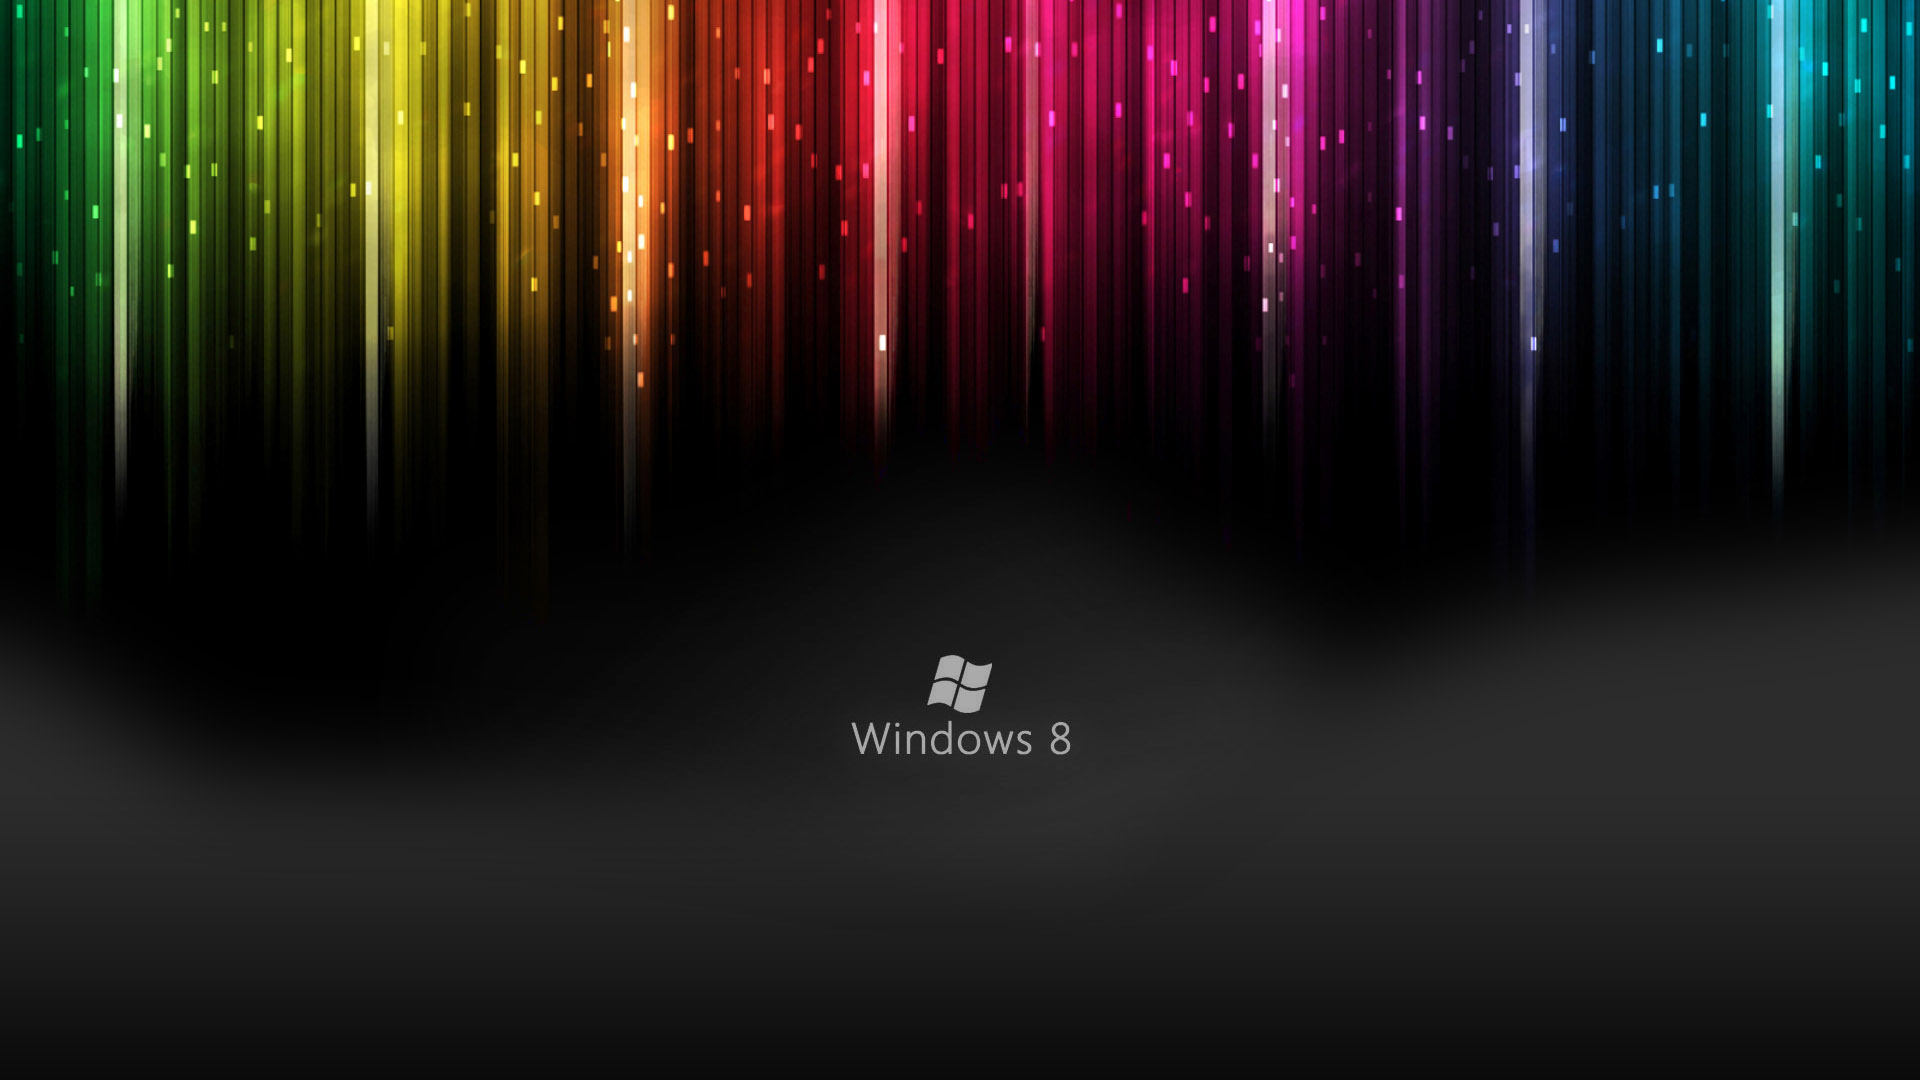 Windows 8 Live Wallpapers HD Wallpaper of Windows   hdwallpaper2013